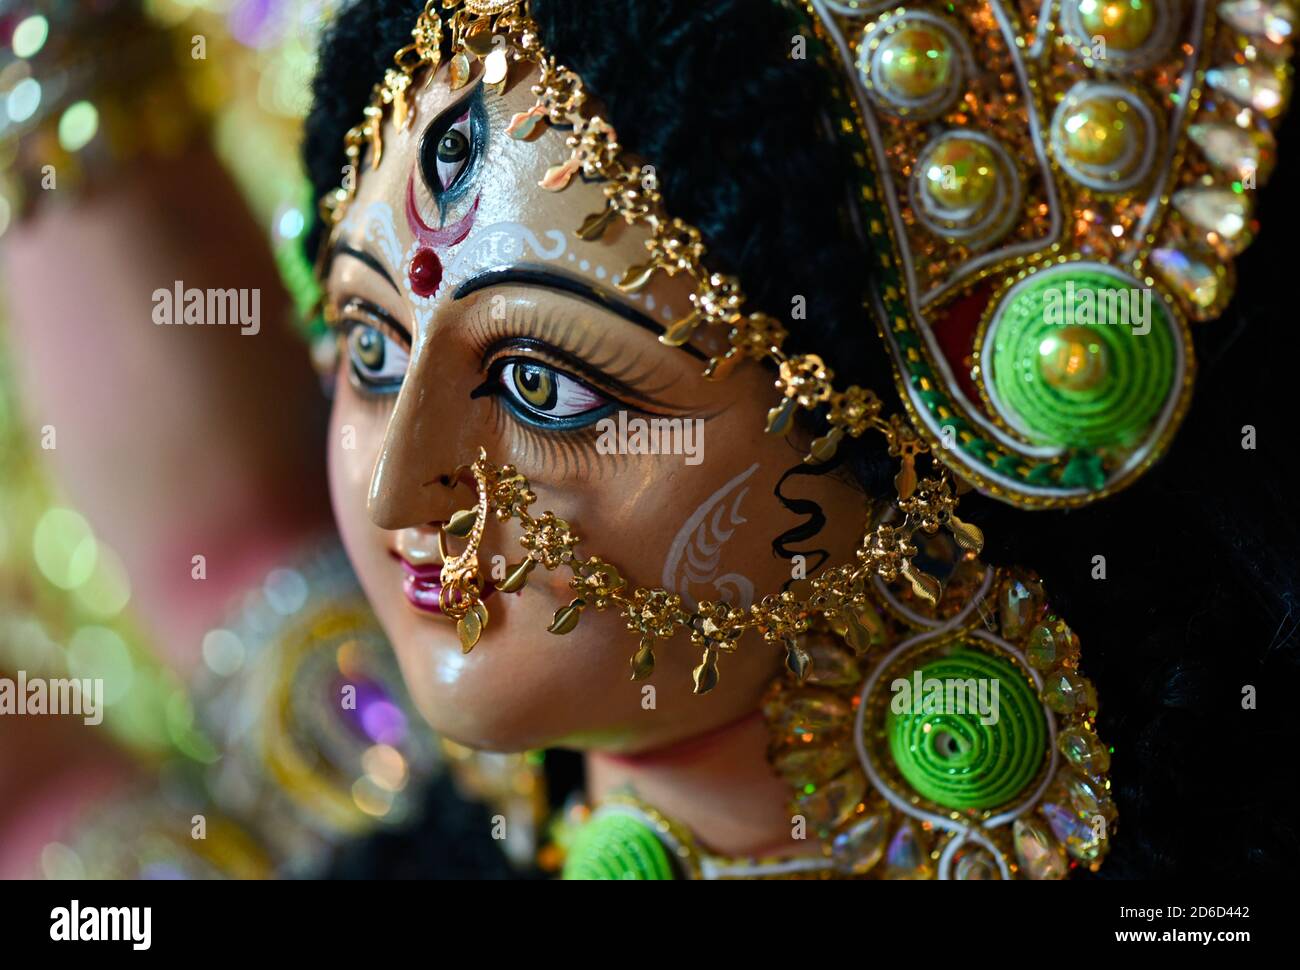 Artisan completed an idol of Devi Durga Maa ahead of Durga puja ...